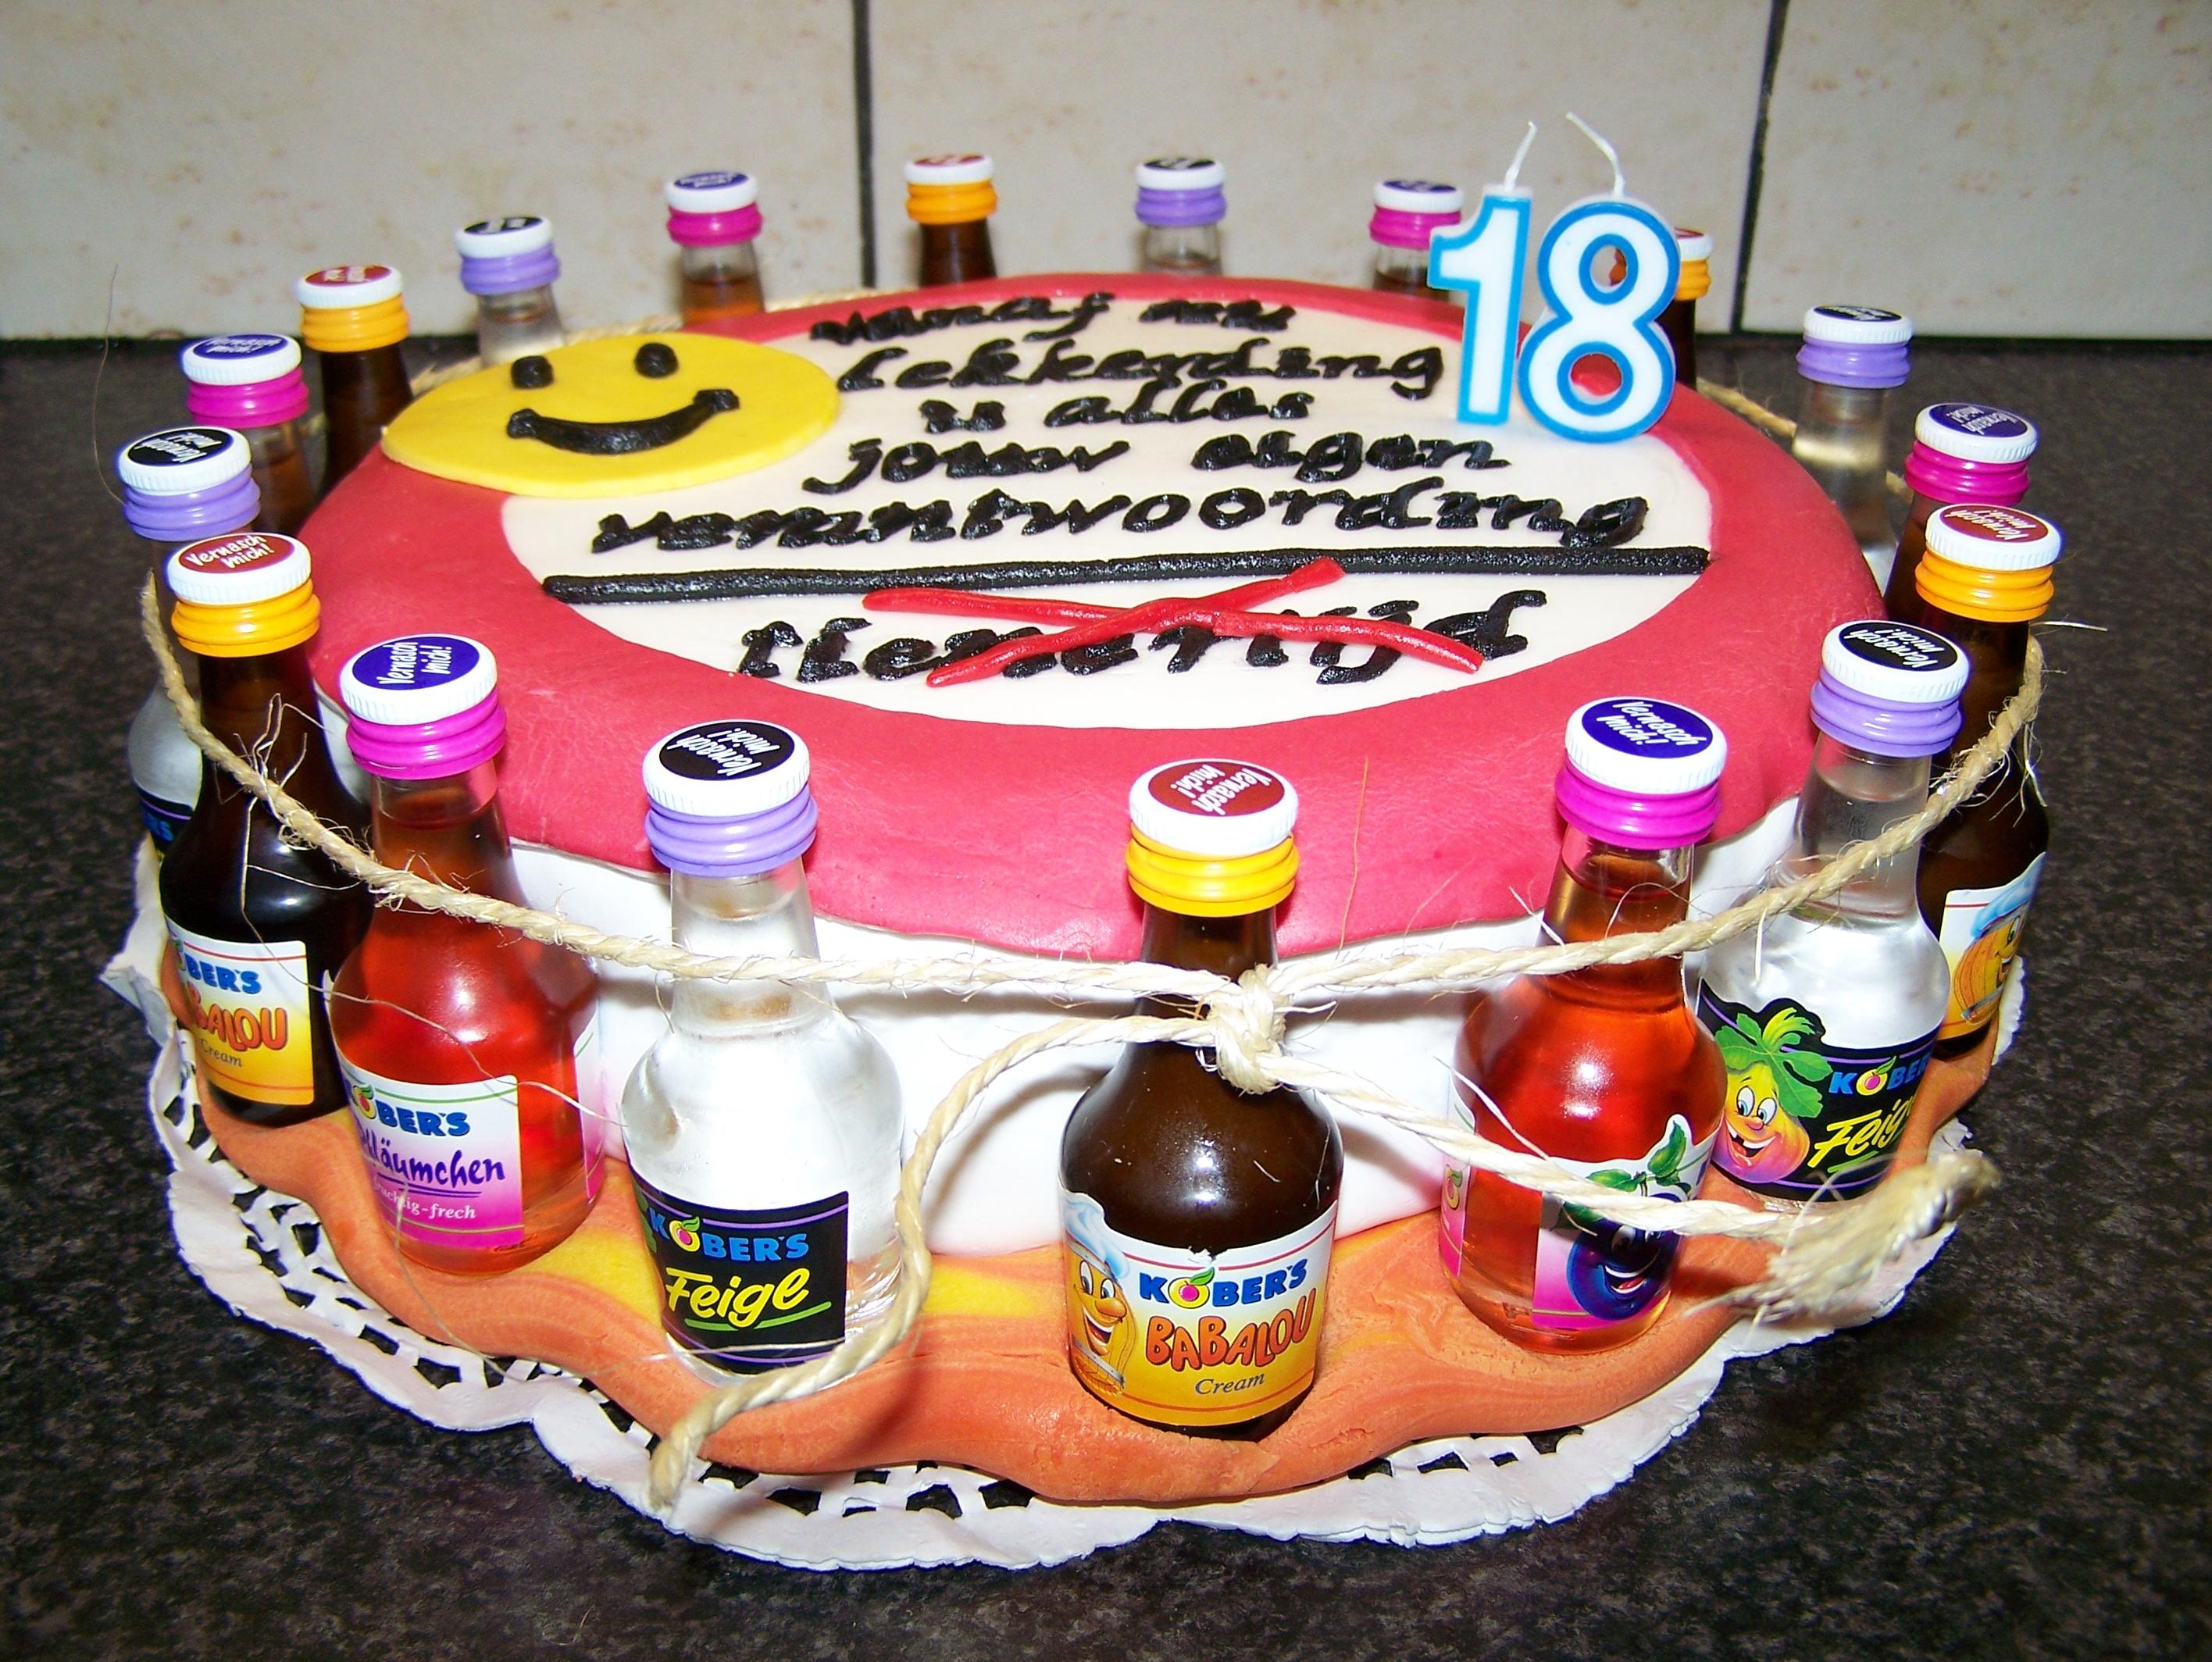 Robby s Torte zum 18 Geburtstag Rezept Gesendet von HOCI toewerlaenderin blogspot com